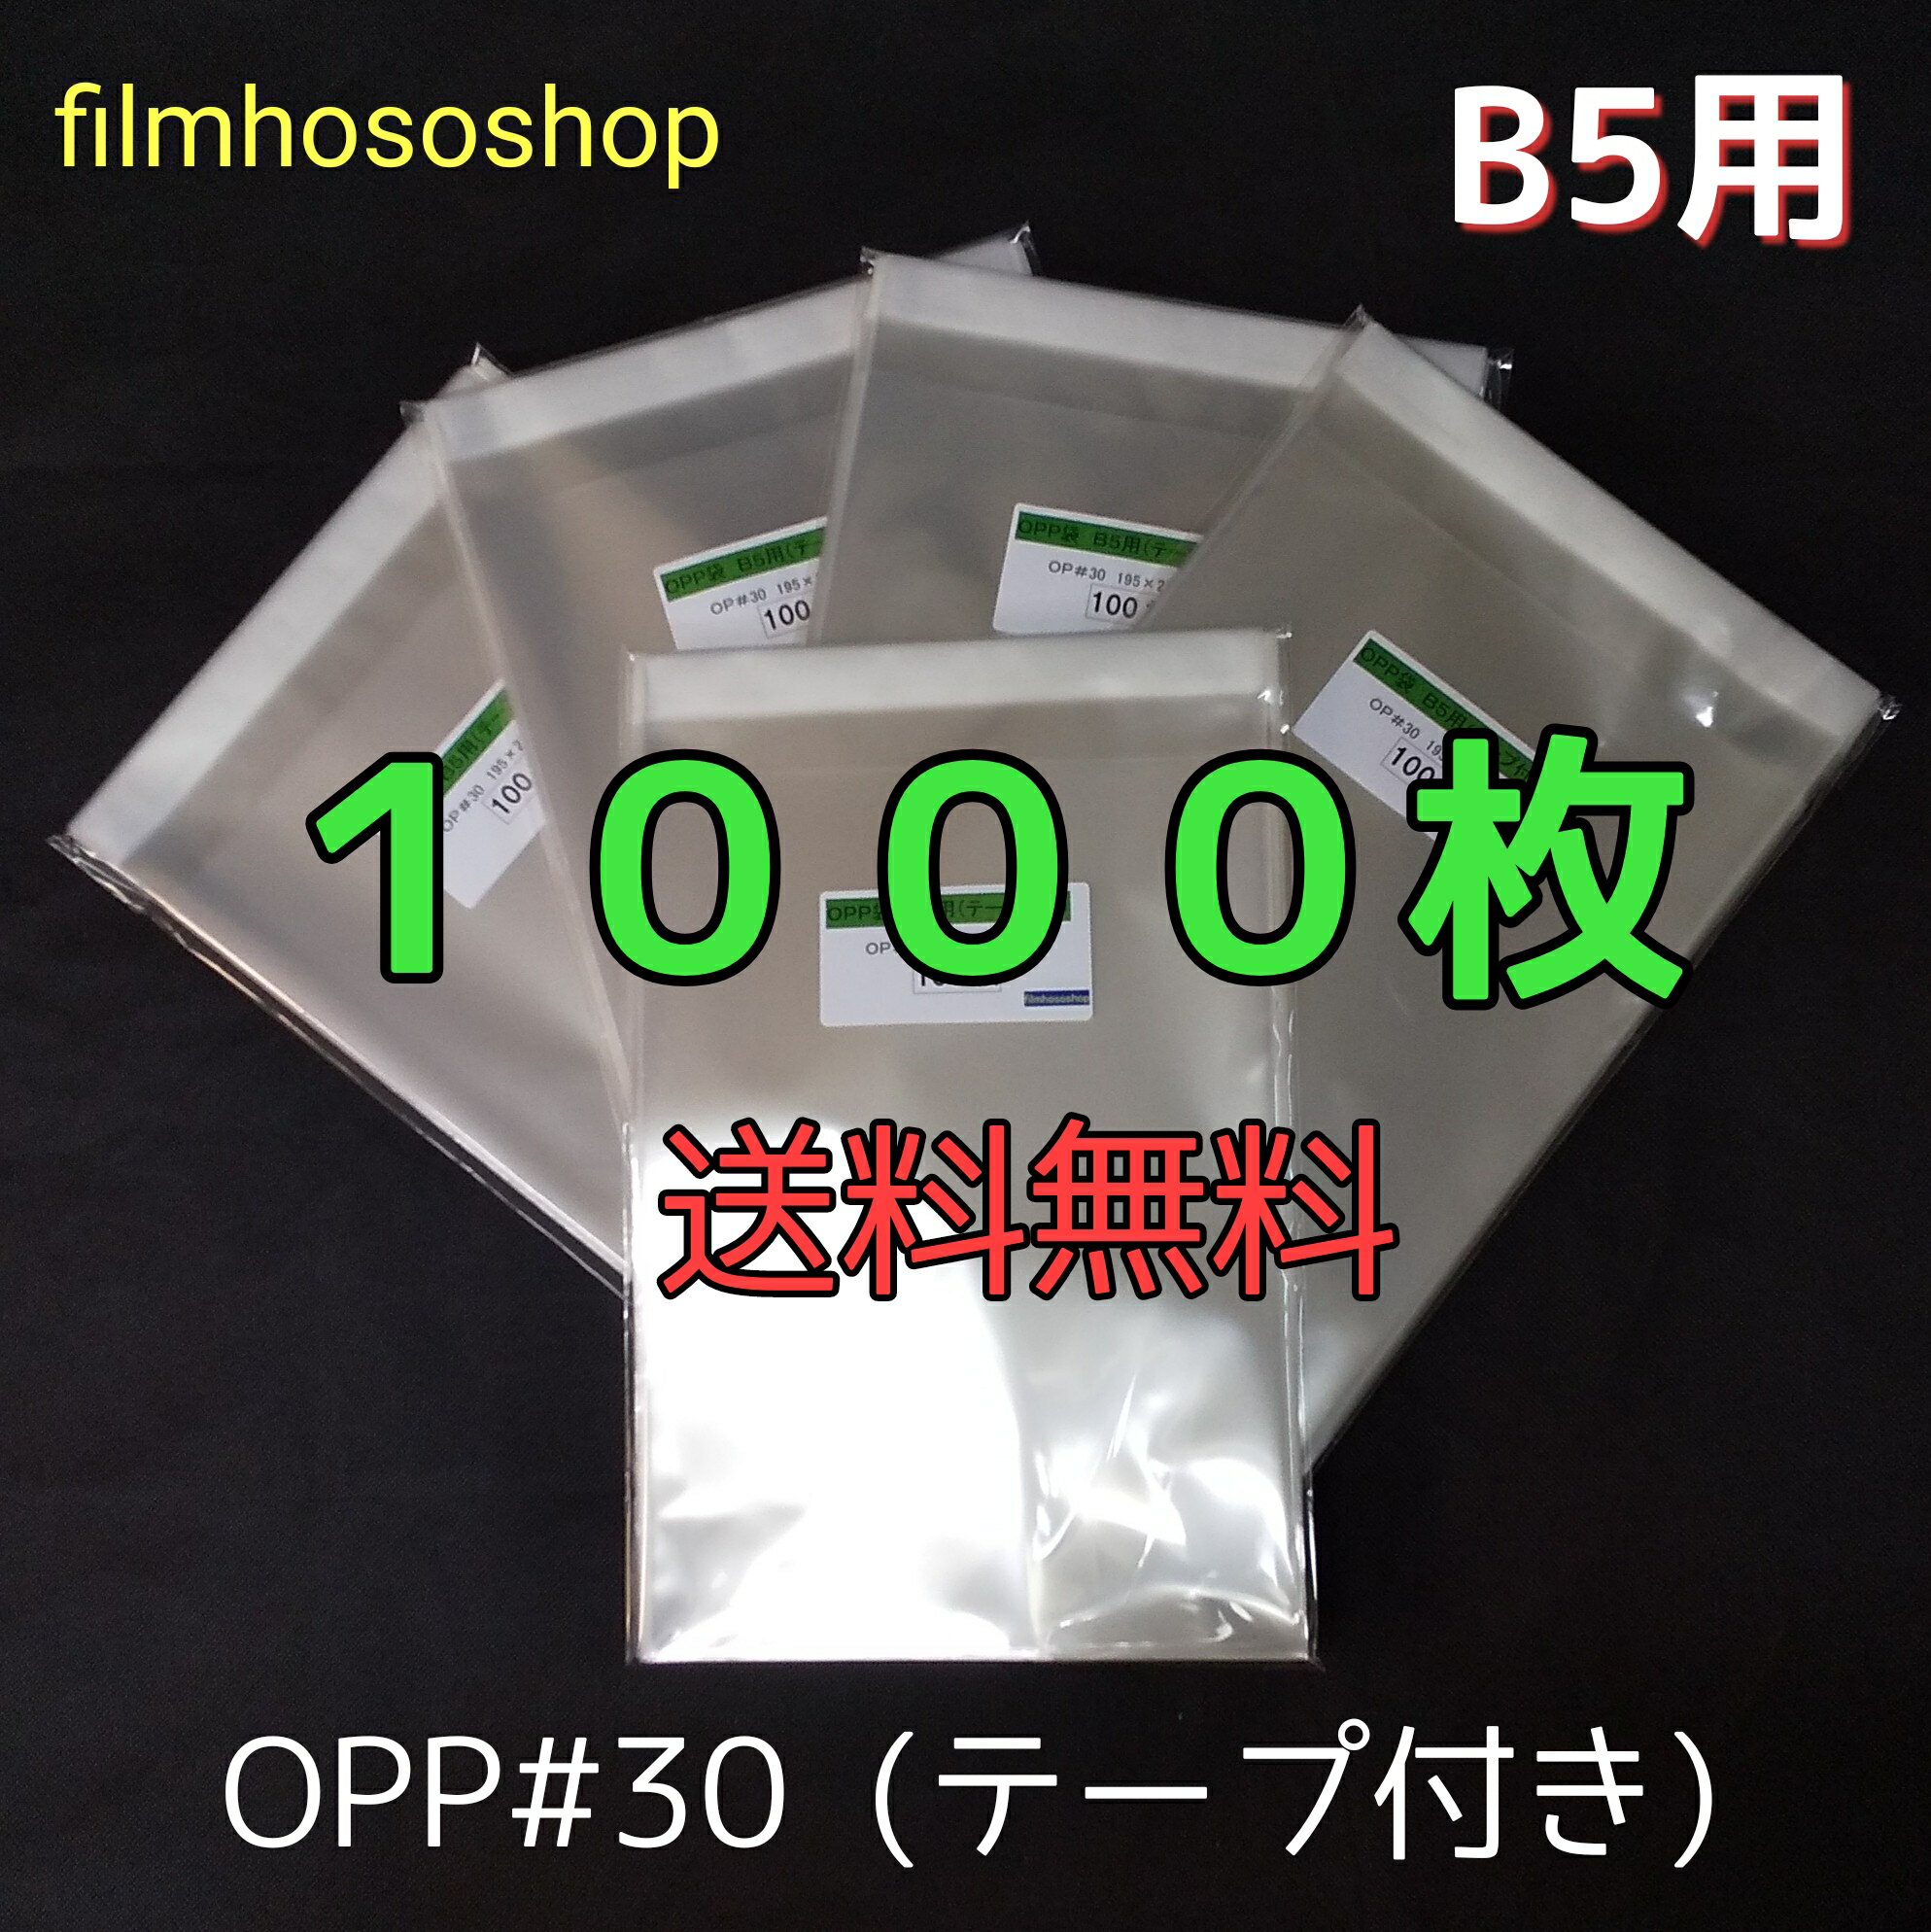 OPP袋 B5 テープ付 1000枚 T-B-5 30ミクロン 195×270+40mm 透明袋 透明フィルム封筒 B5サイズ DMポスト投函 透明小分け袋 ラッピング袋 梱包袋 送料無料日本製 工場直販 梱包袋